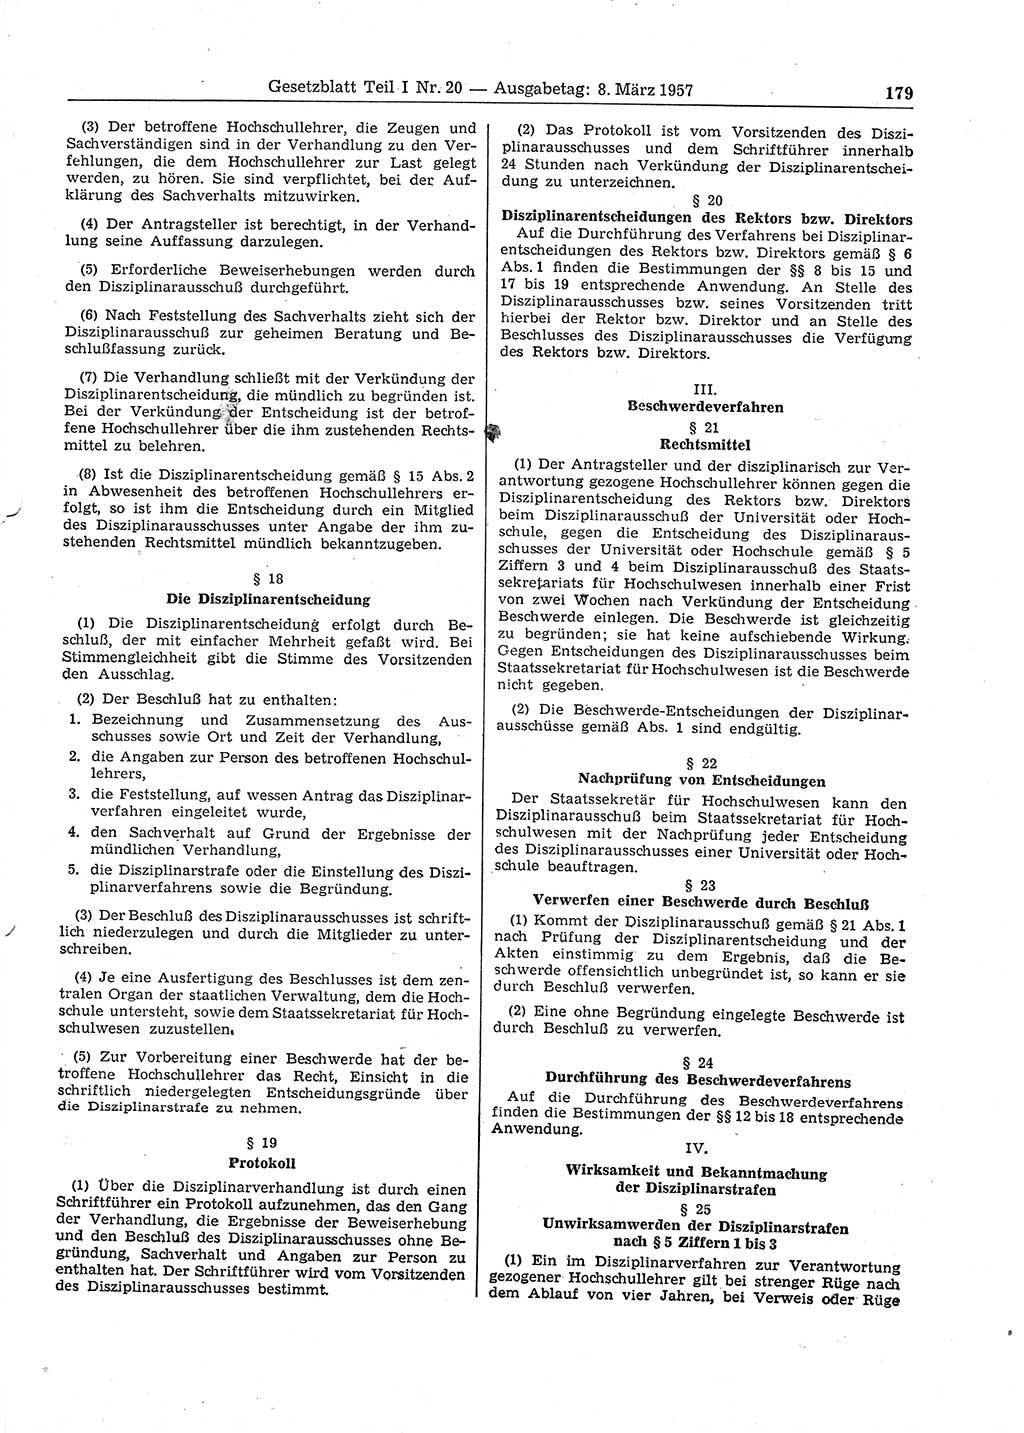 Gesetzblatt (GBl.) der Deutschen Demokratischen Republik (DDR) Teil Ⅰ 1957, Seite 179 (GBl. DDR Ⅰ 1957, S. 179)